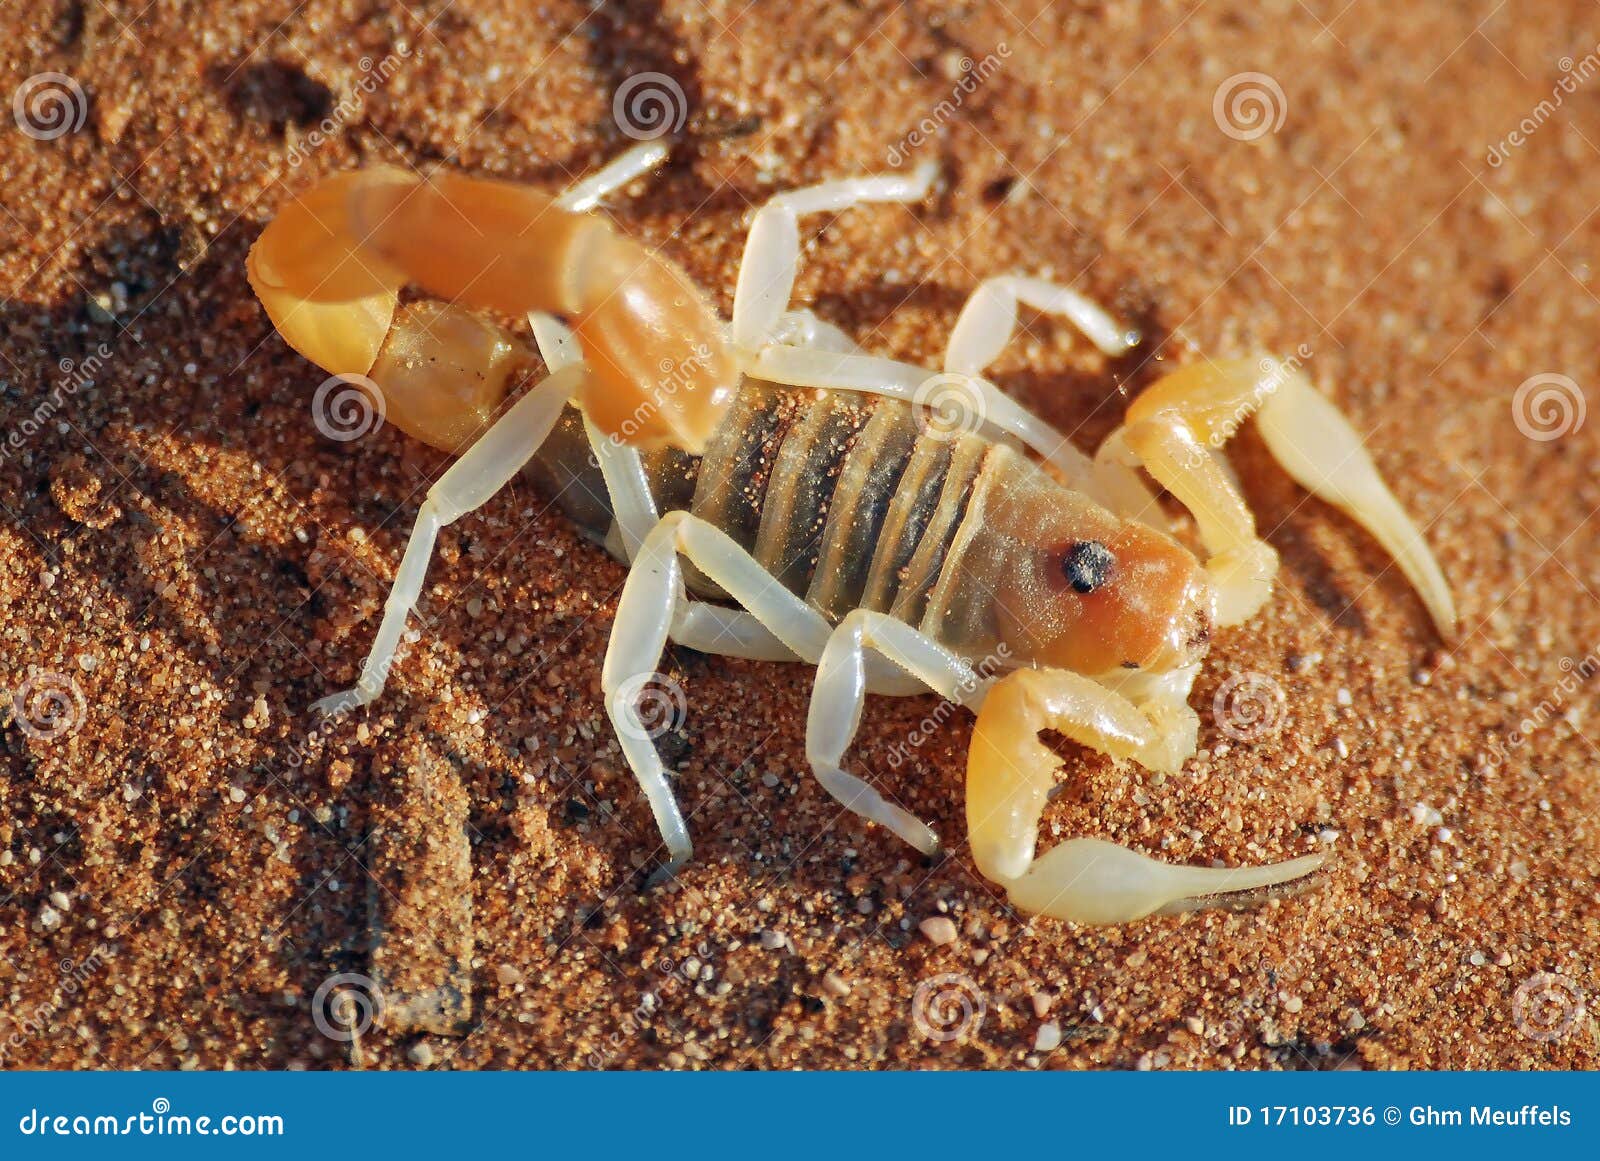 沙漠中的蝎子壁纸_主题酷魅